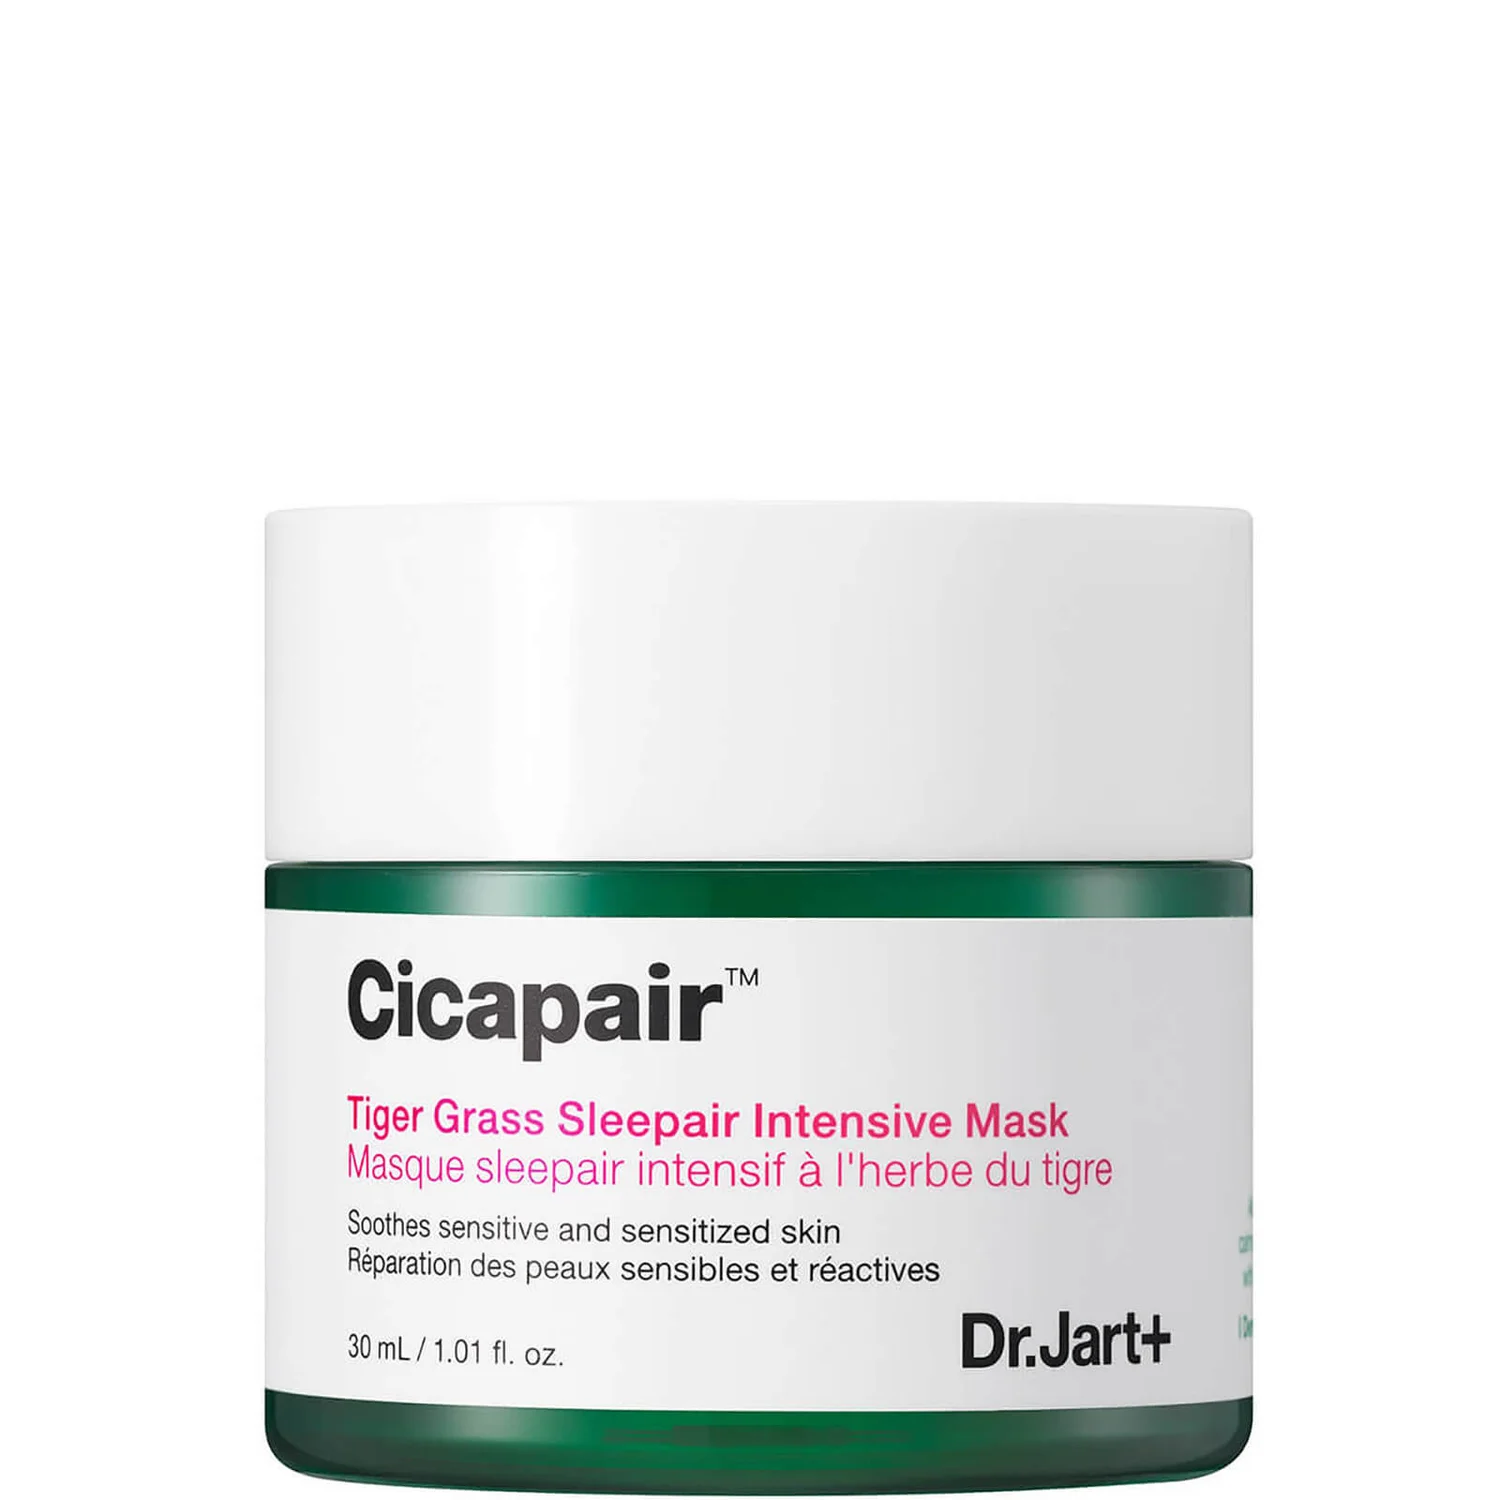 cultbeauty.com | DR.JART+ CICAPAIR SLEEPAIR INTENSIVE MASK 30ML